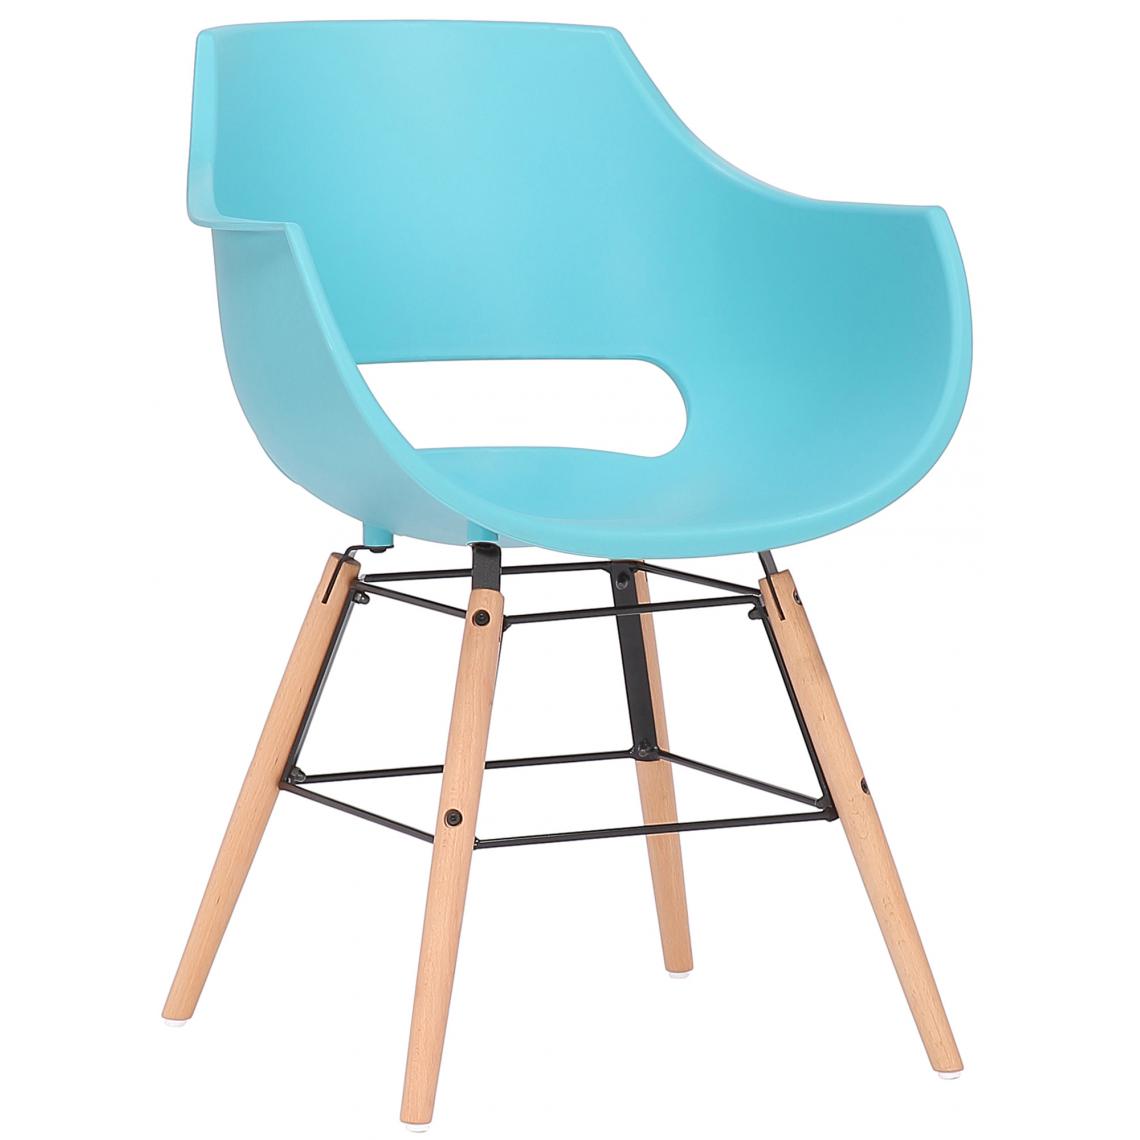 Icaverne - Joli Chaise en plastique gamme Helsinki naturelle couleur bleu - Chaises